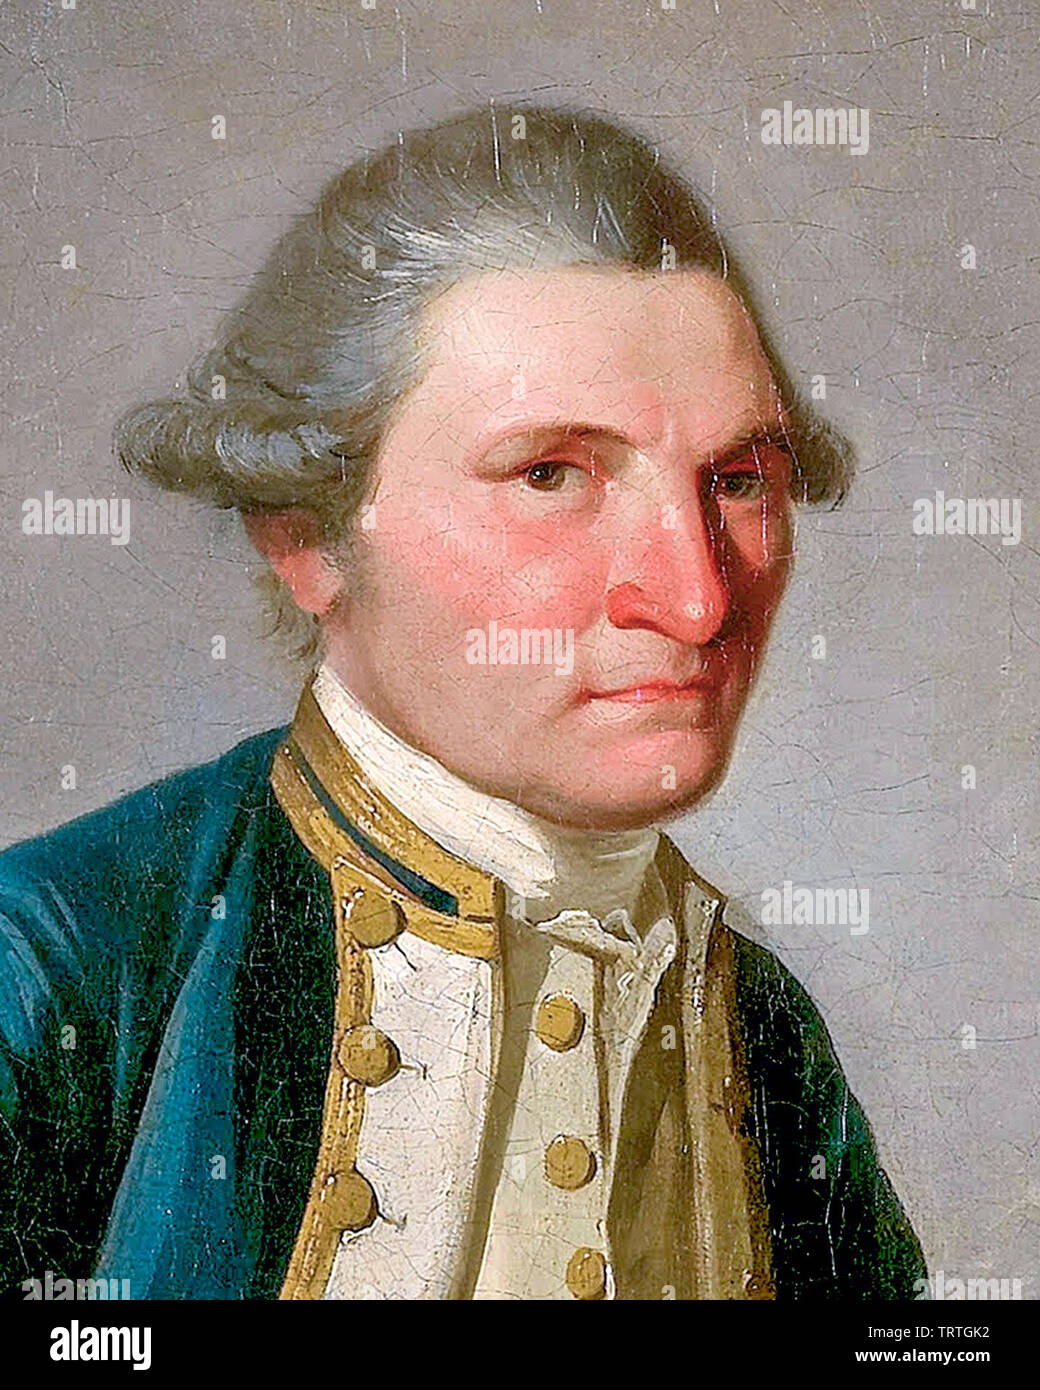 Le capitaine James Cook (17281779), portrait, vers 1780 Photo Stock